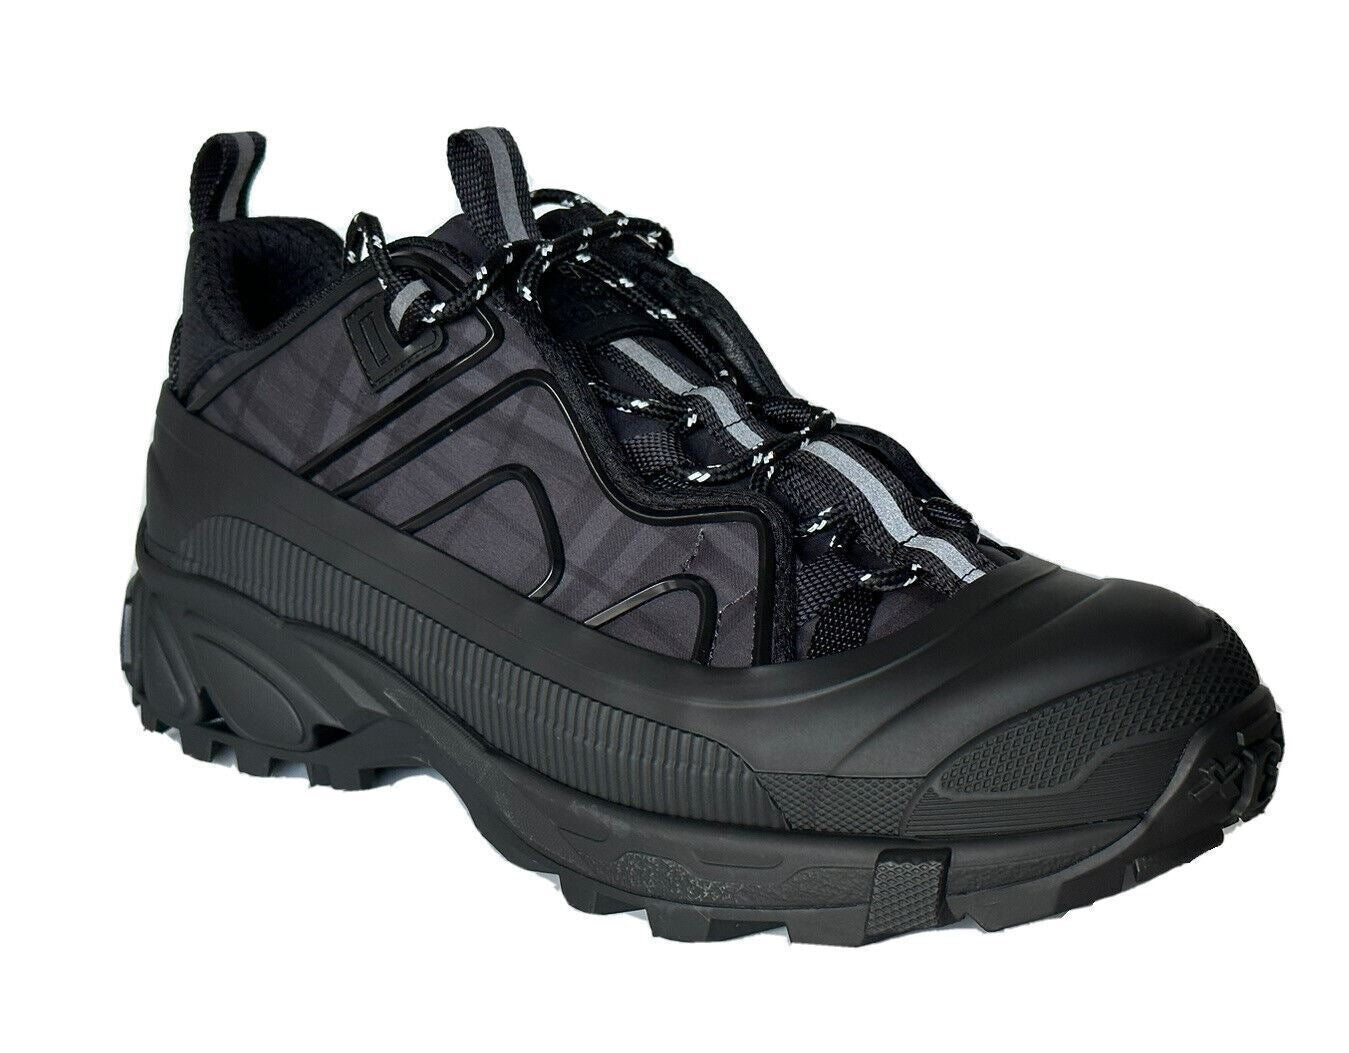 Мужские темно-серые кроссовки Burberry Arthur Dark Charcoal за 890 долларов США 11 США (44 ЕС) 8042584 IT 